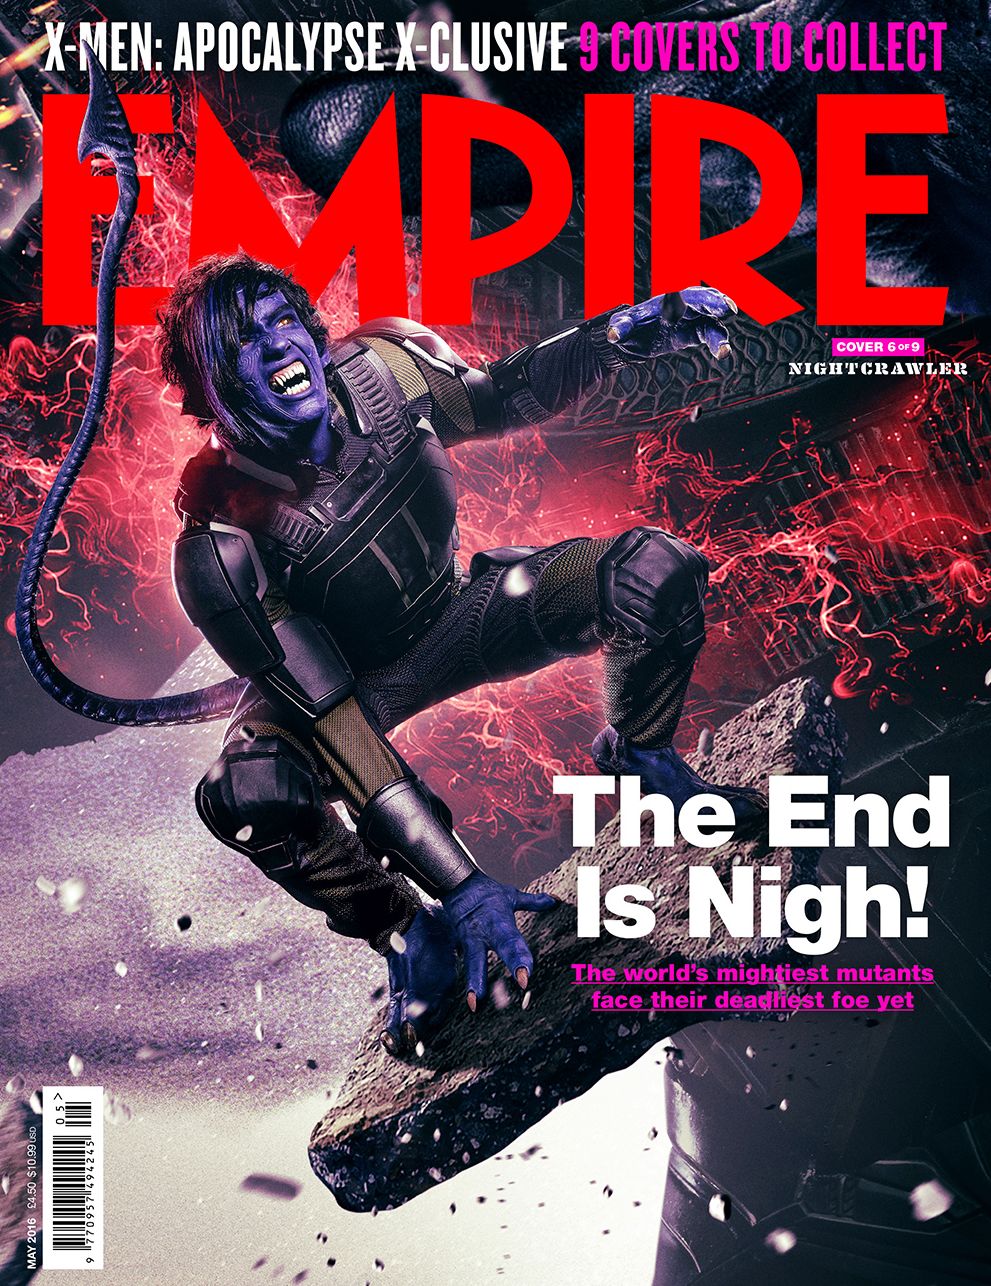 Nightcrawler X-Men: Apocalypse Empire Cover